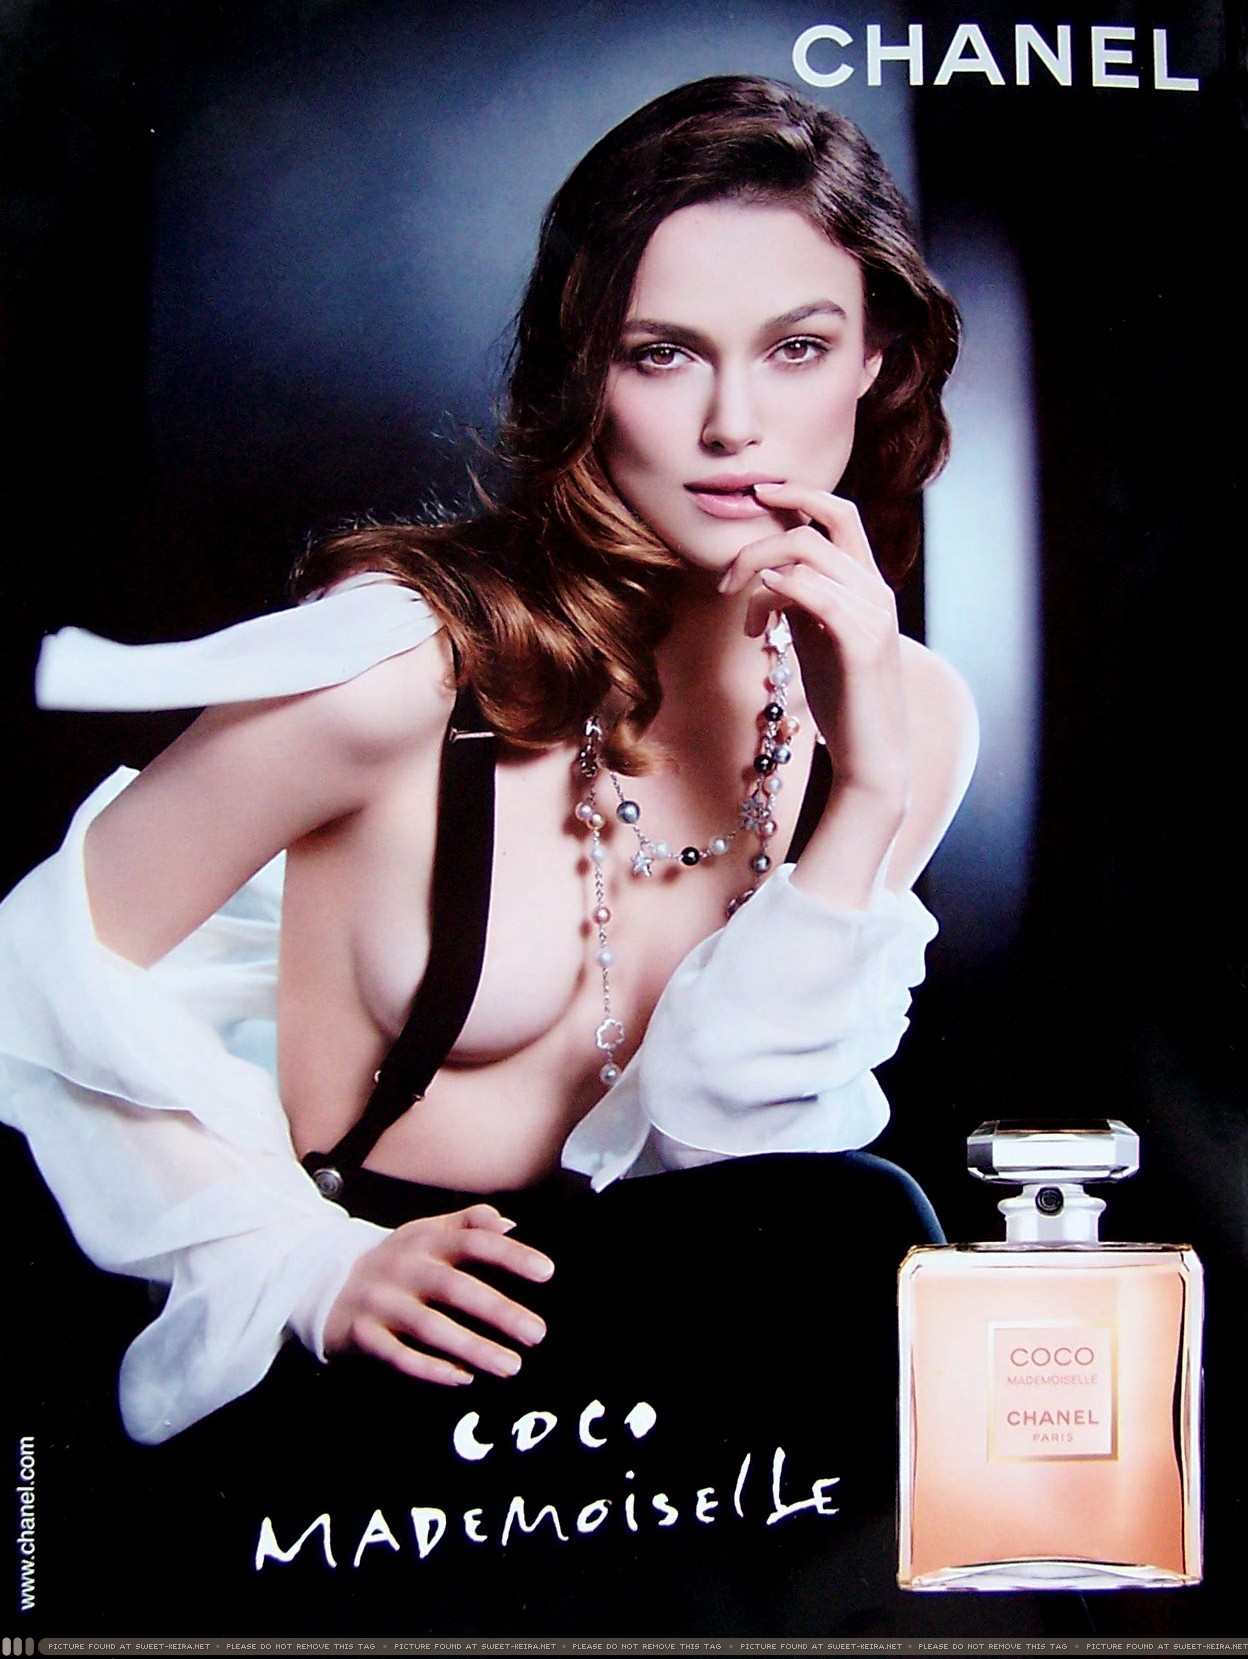 В рекламной кампании Chanel формам актрисы также прибавили объем